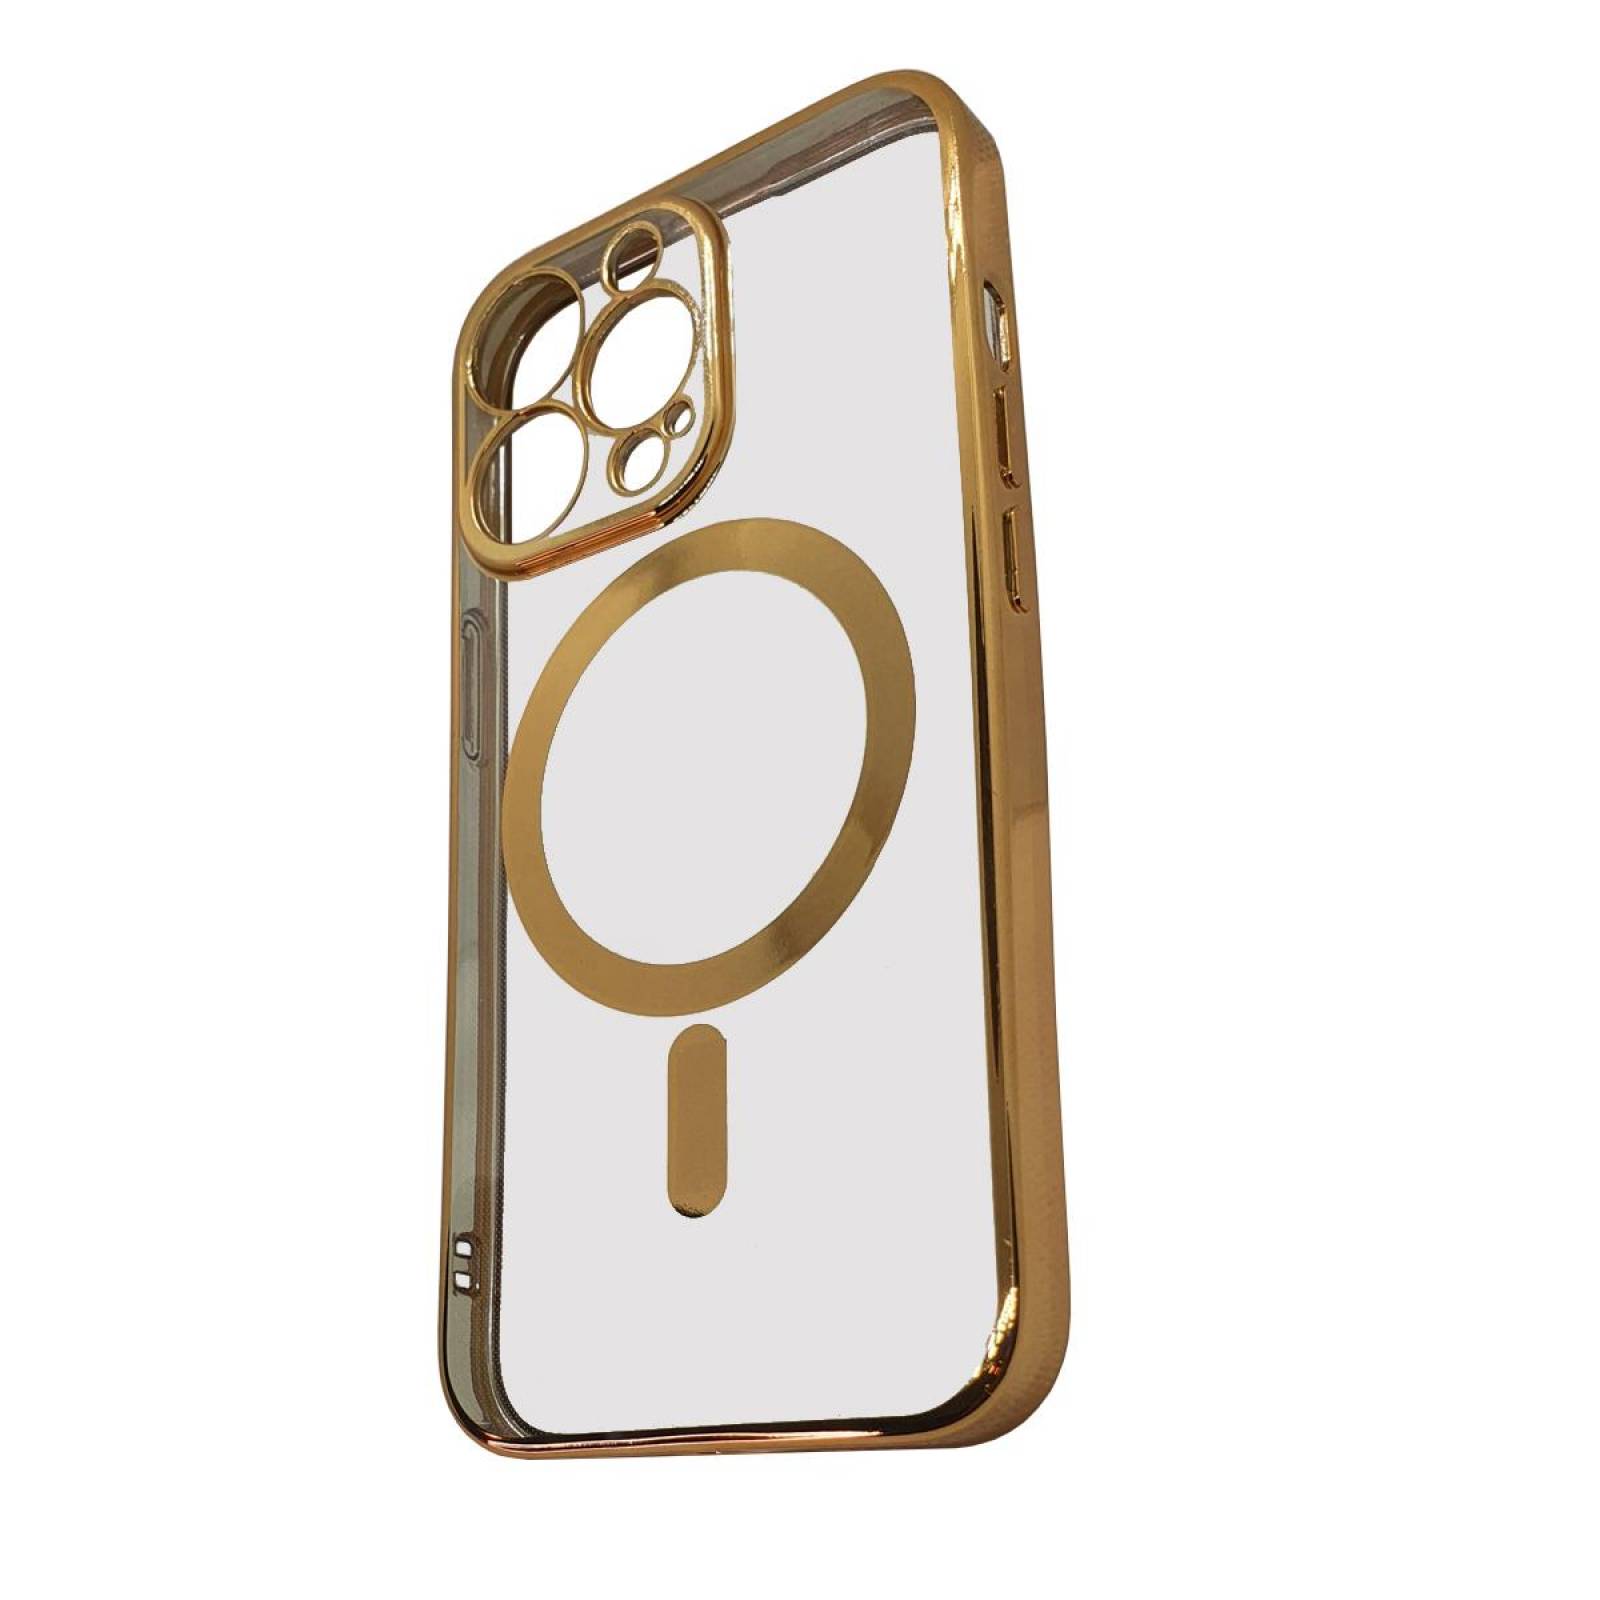 Funda MagSafe transparente y metal iPhone 13 Pro Max (dorado